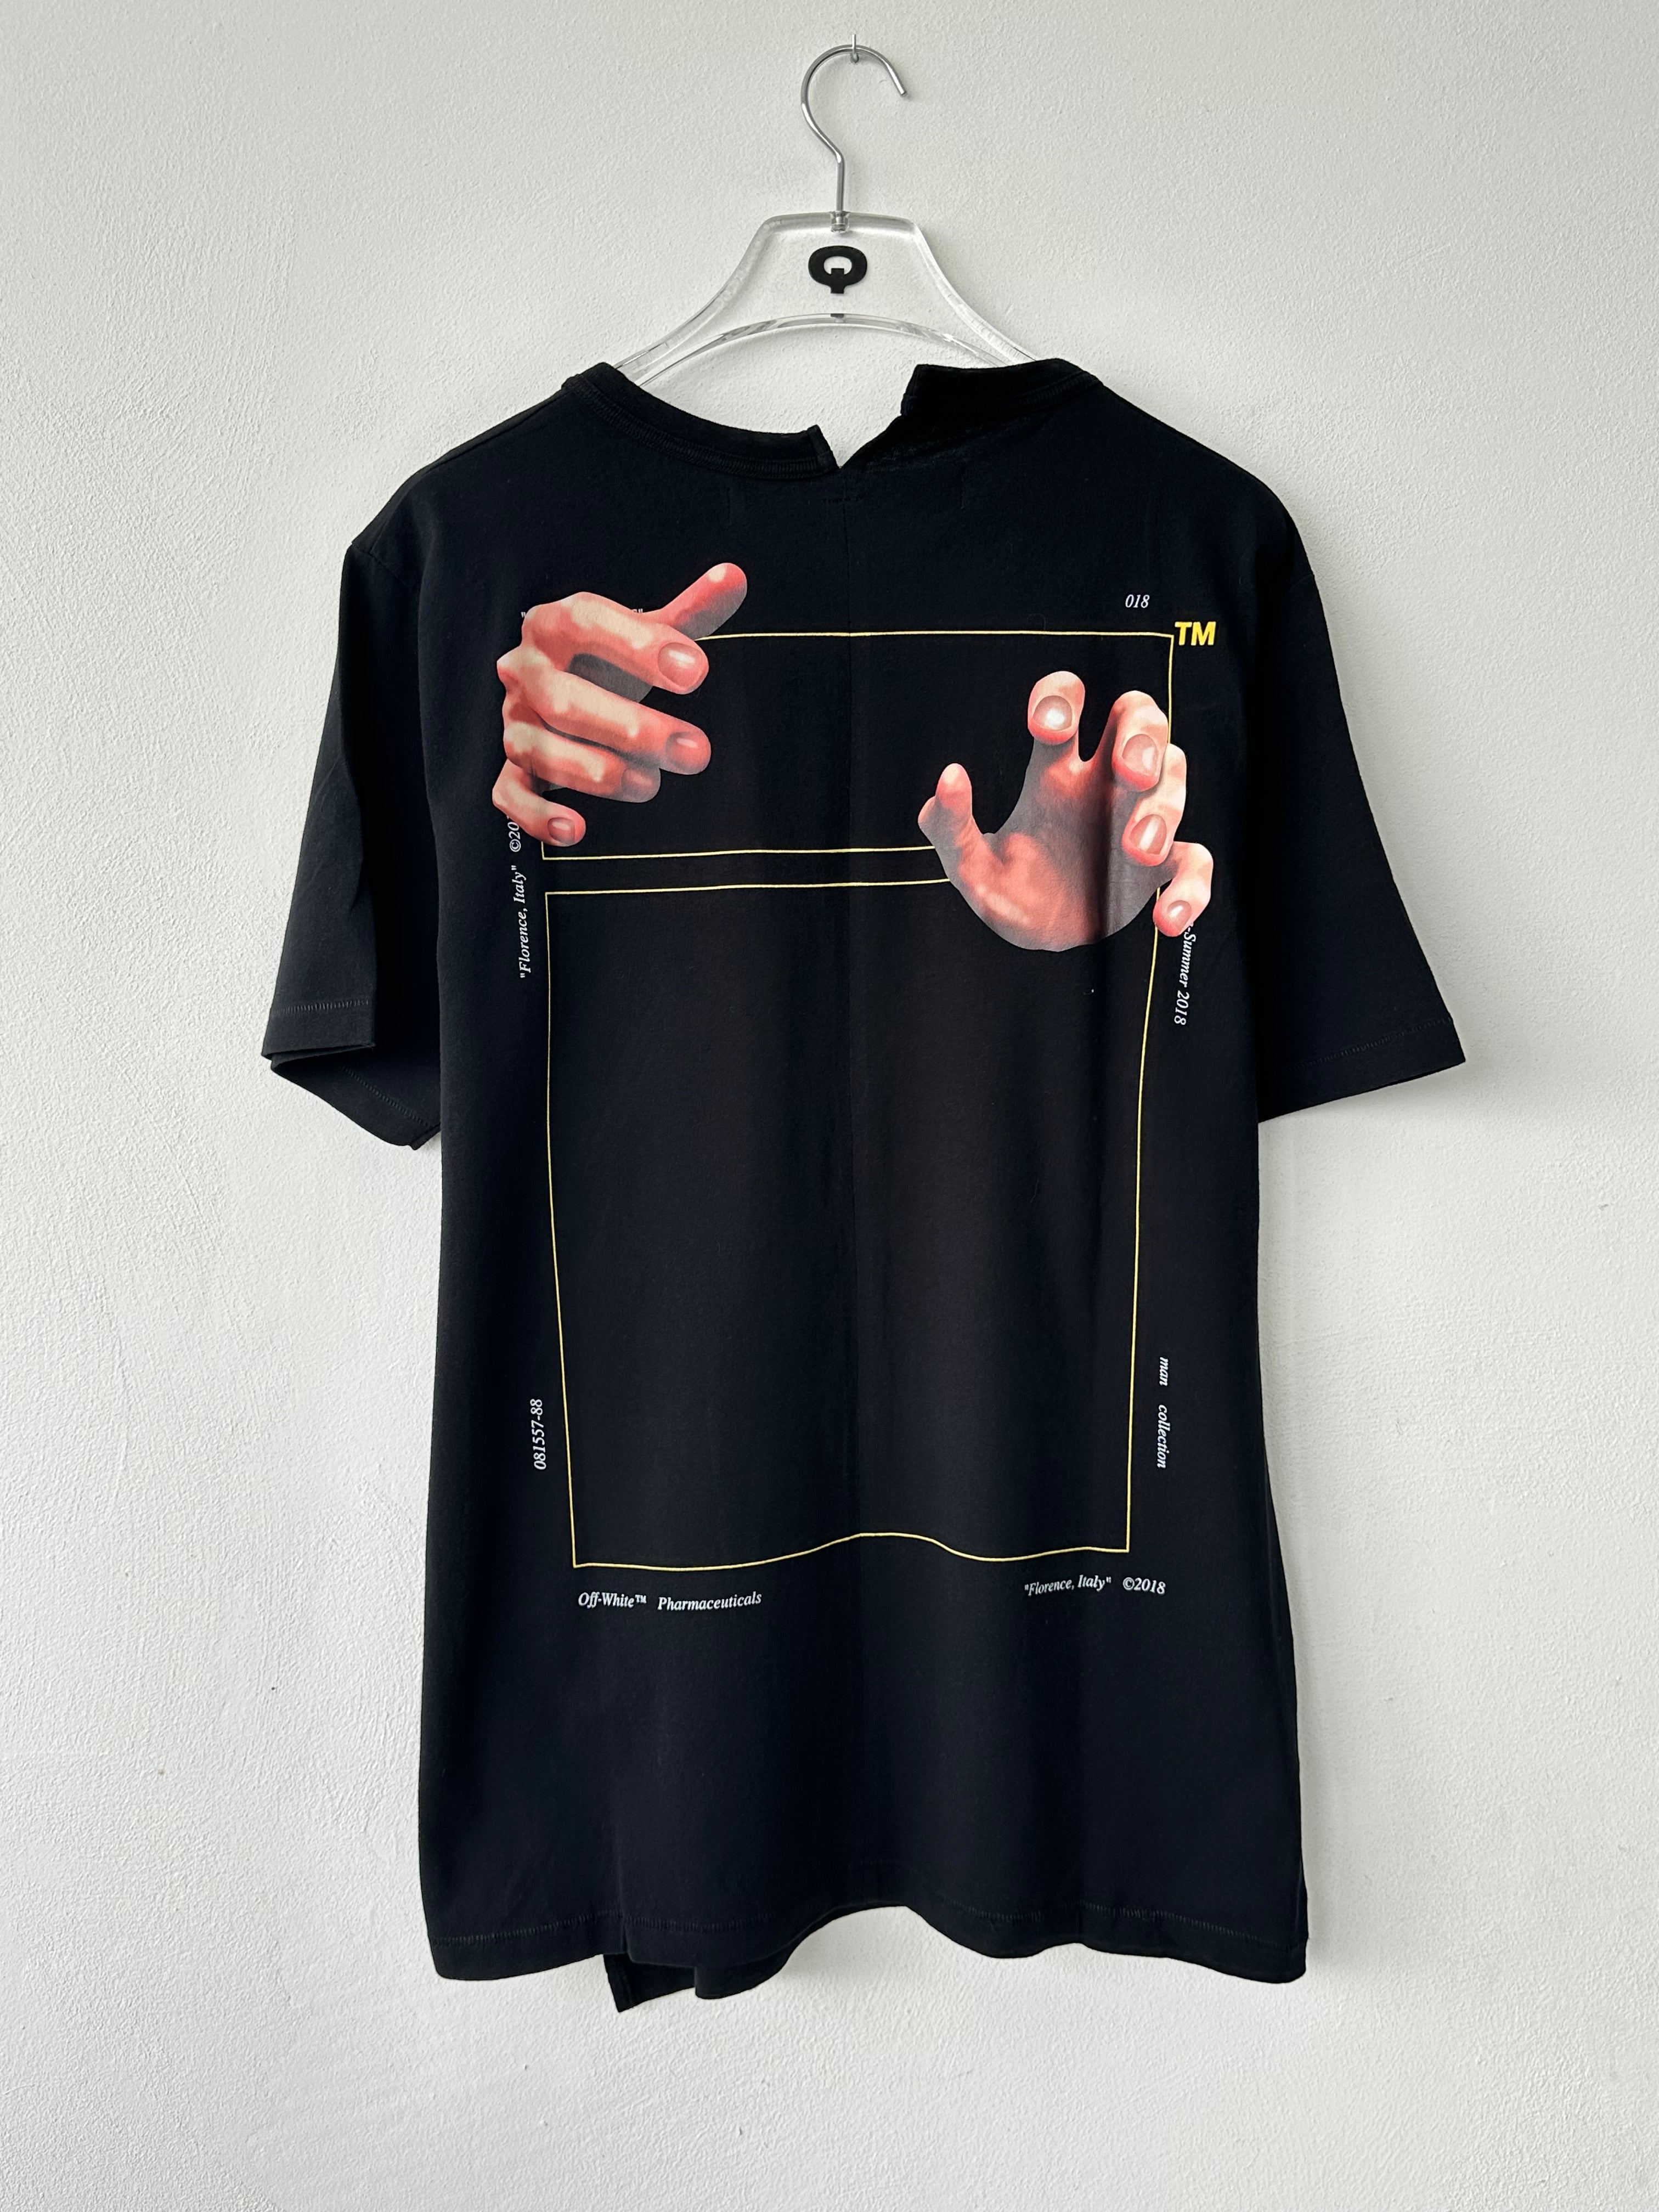 Hands Print T-shirt